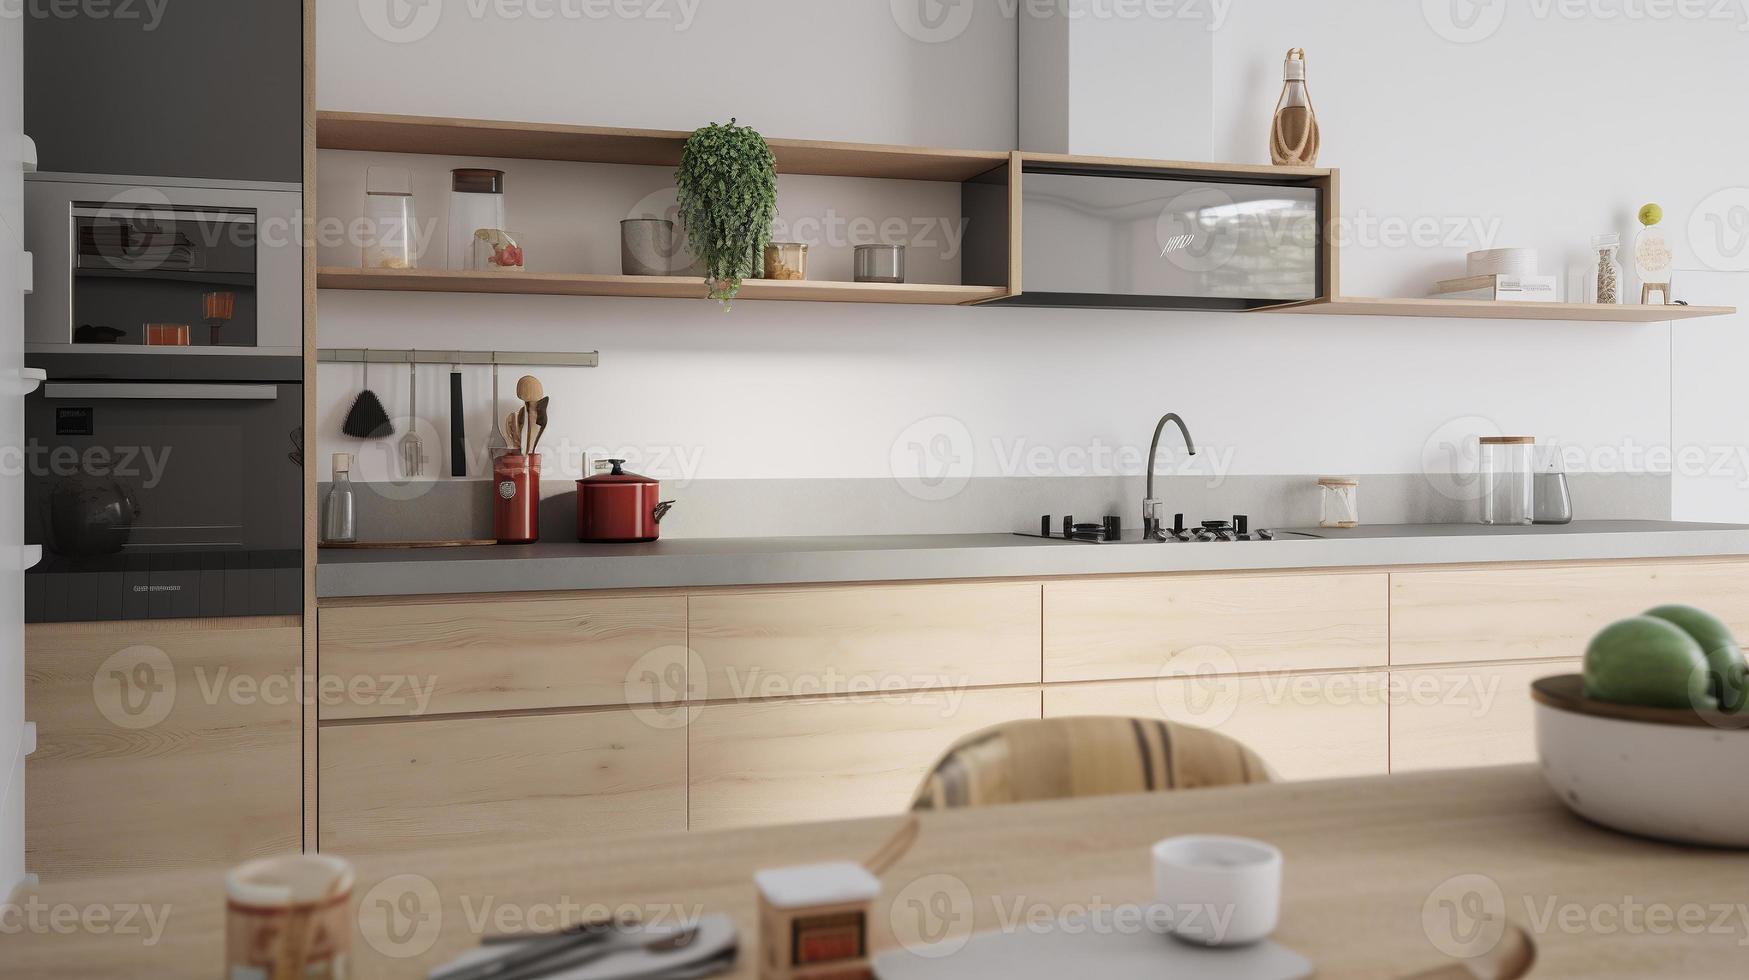 enkel minimalistisk modern kök mysigt bekväm och elegant för hus och lägenhet, skåp, kök handfat, och några kök vitvaror, dinning rum, Bra interiör. foto